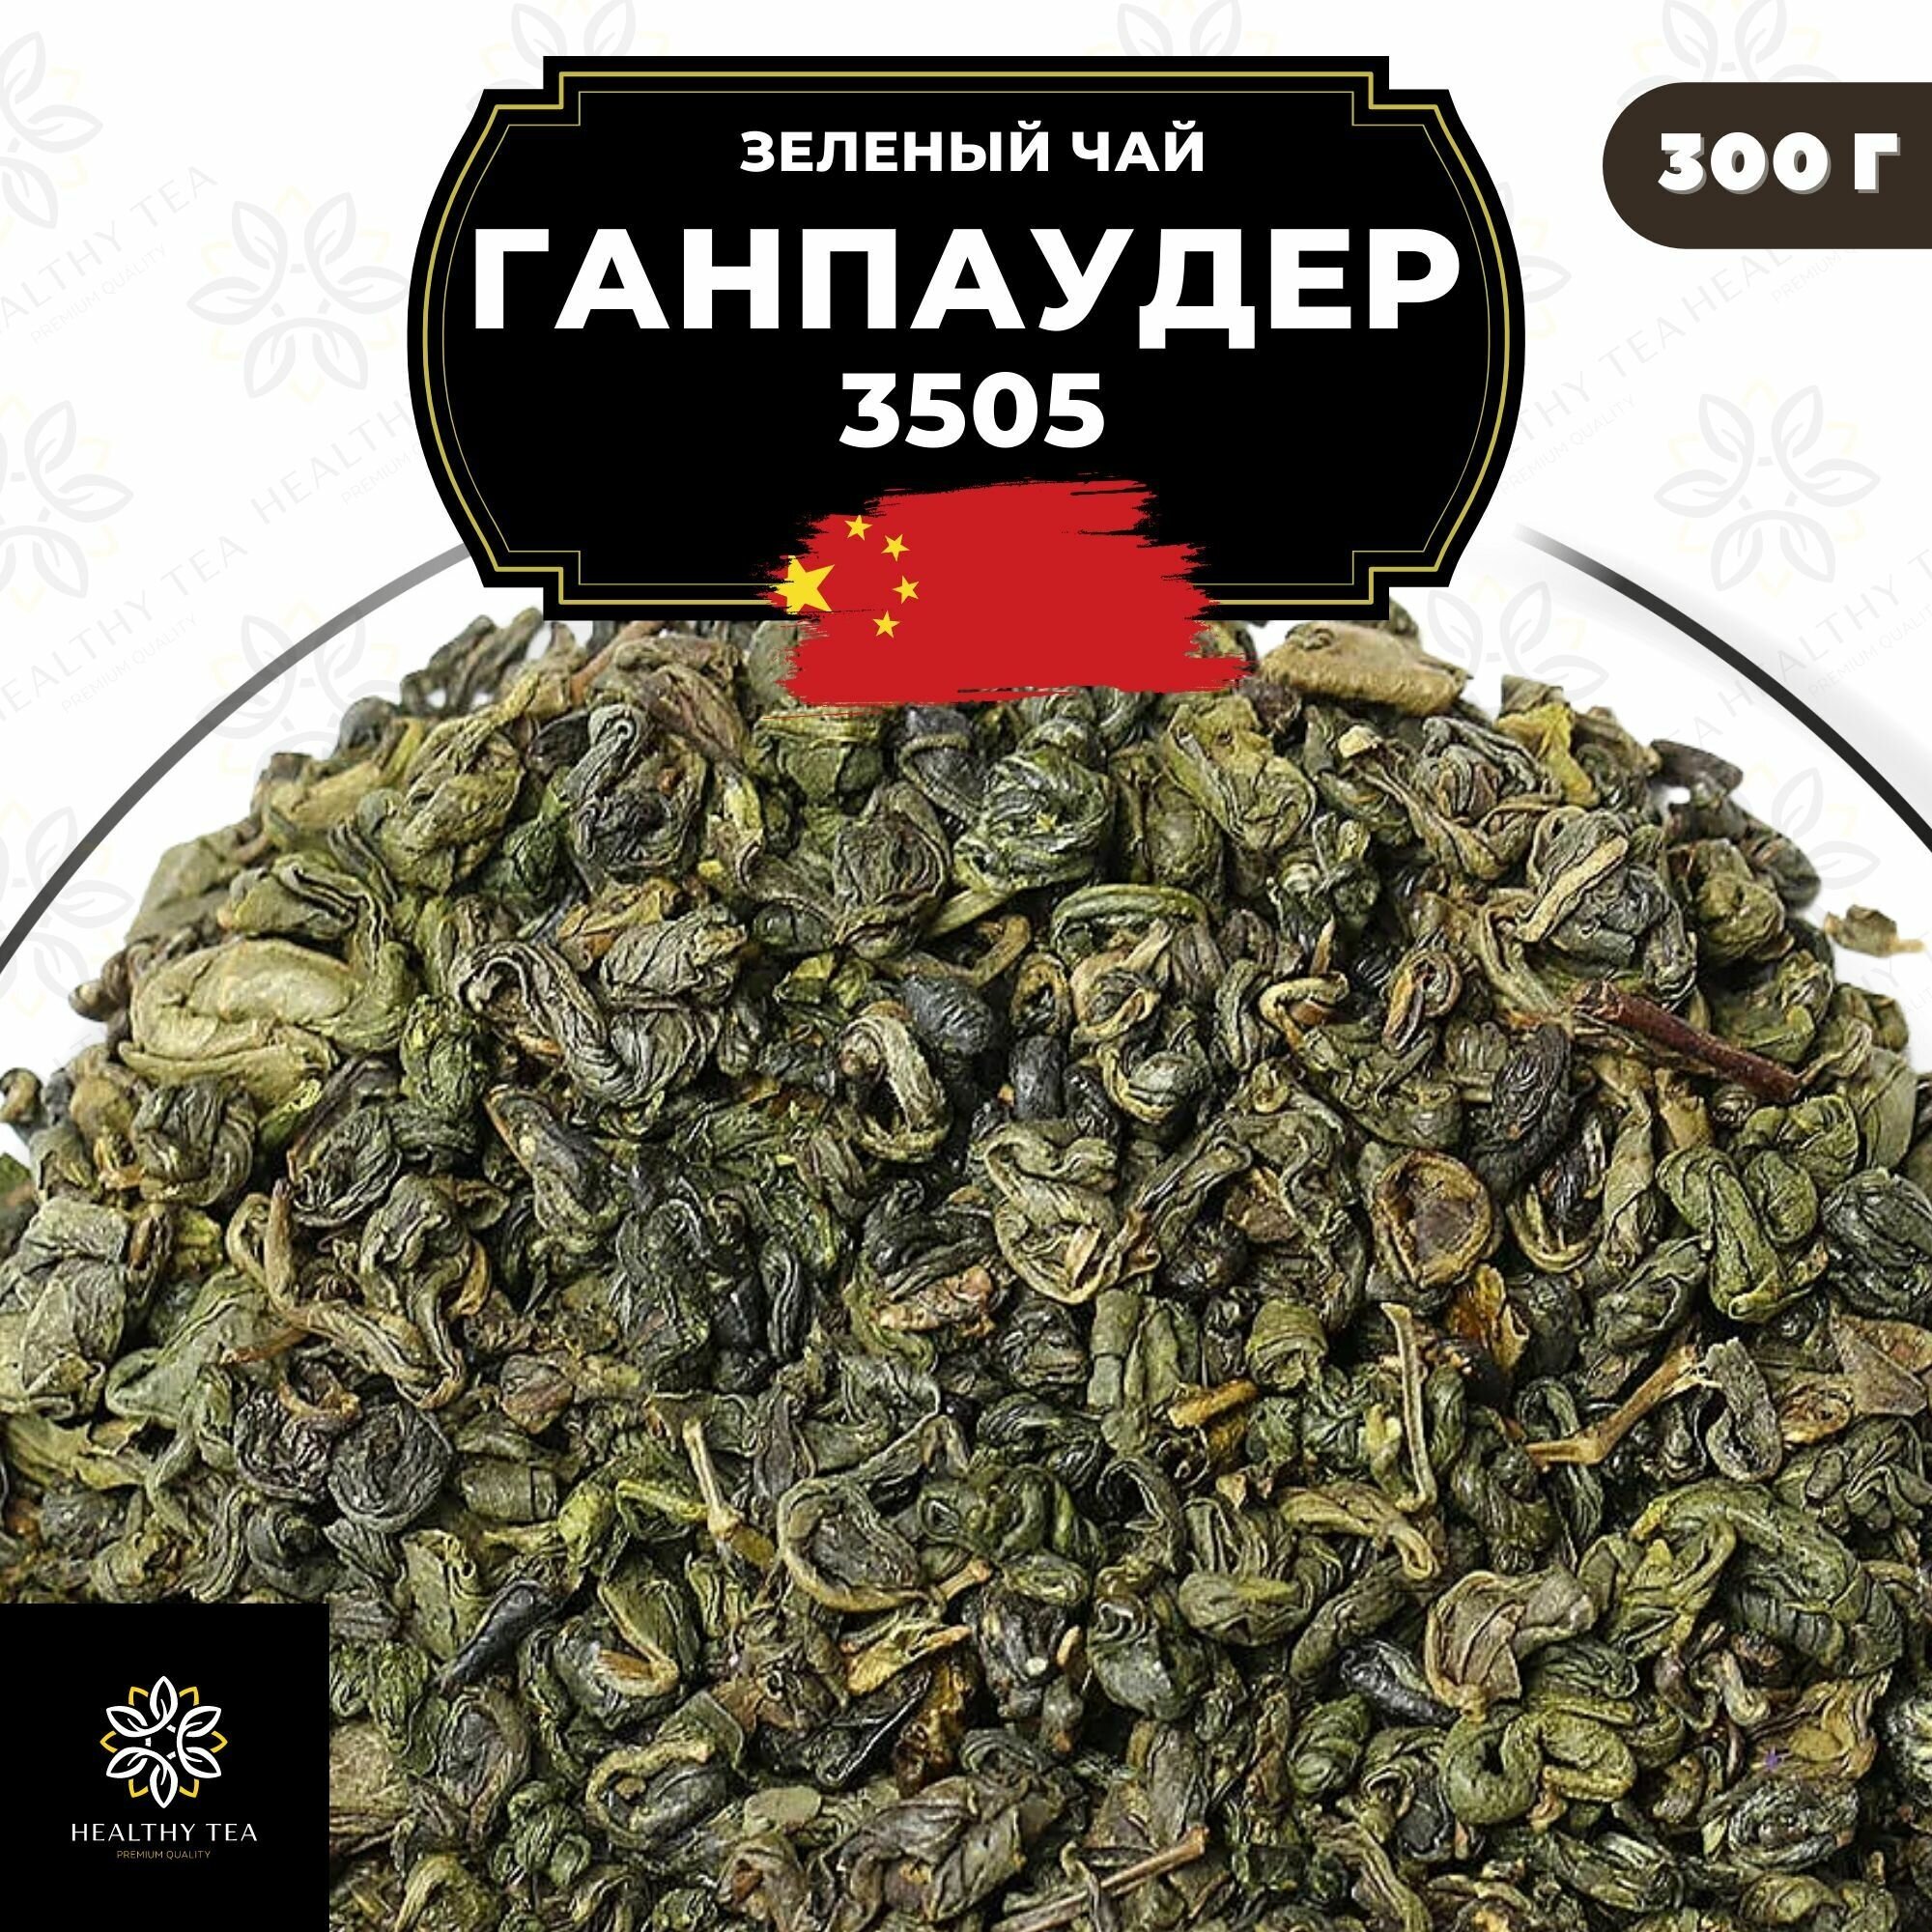 Китайский зеленый чай без добавок Ганпаудер 3505 Полезный чай / HEALTHY TEA, 300 г